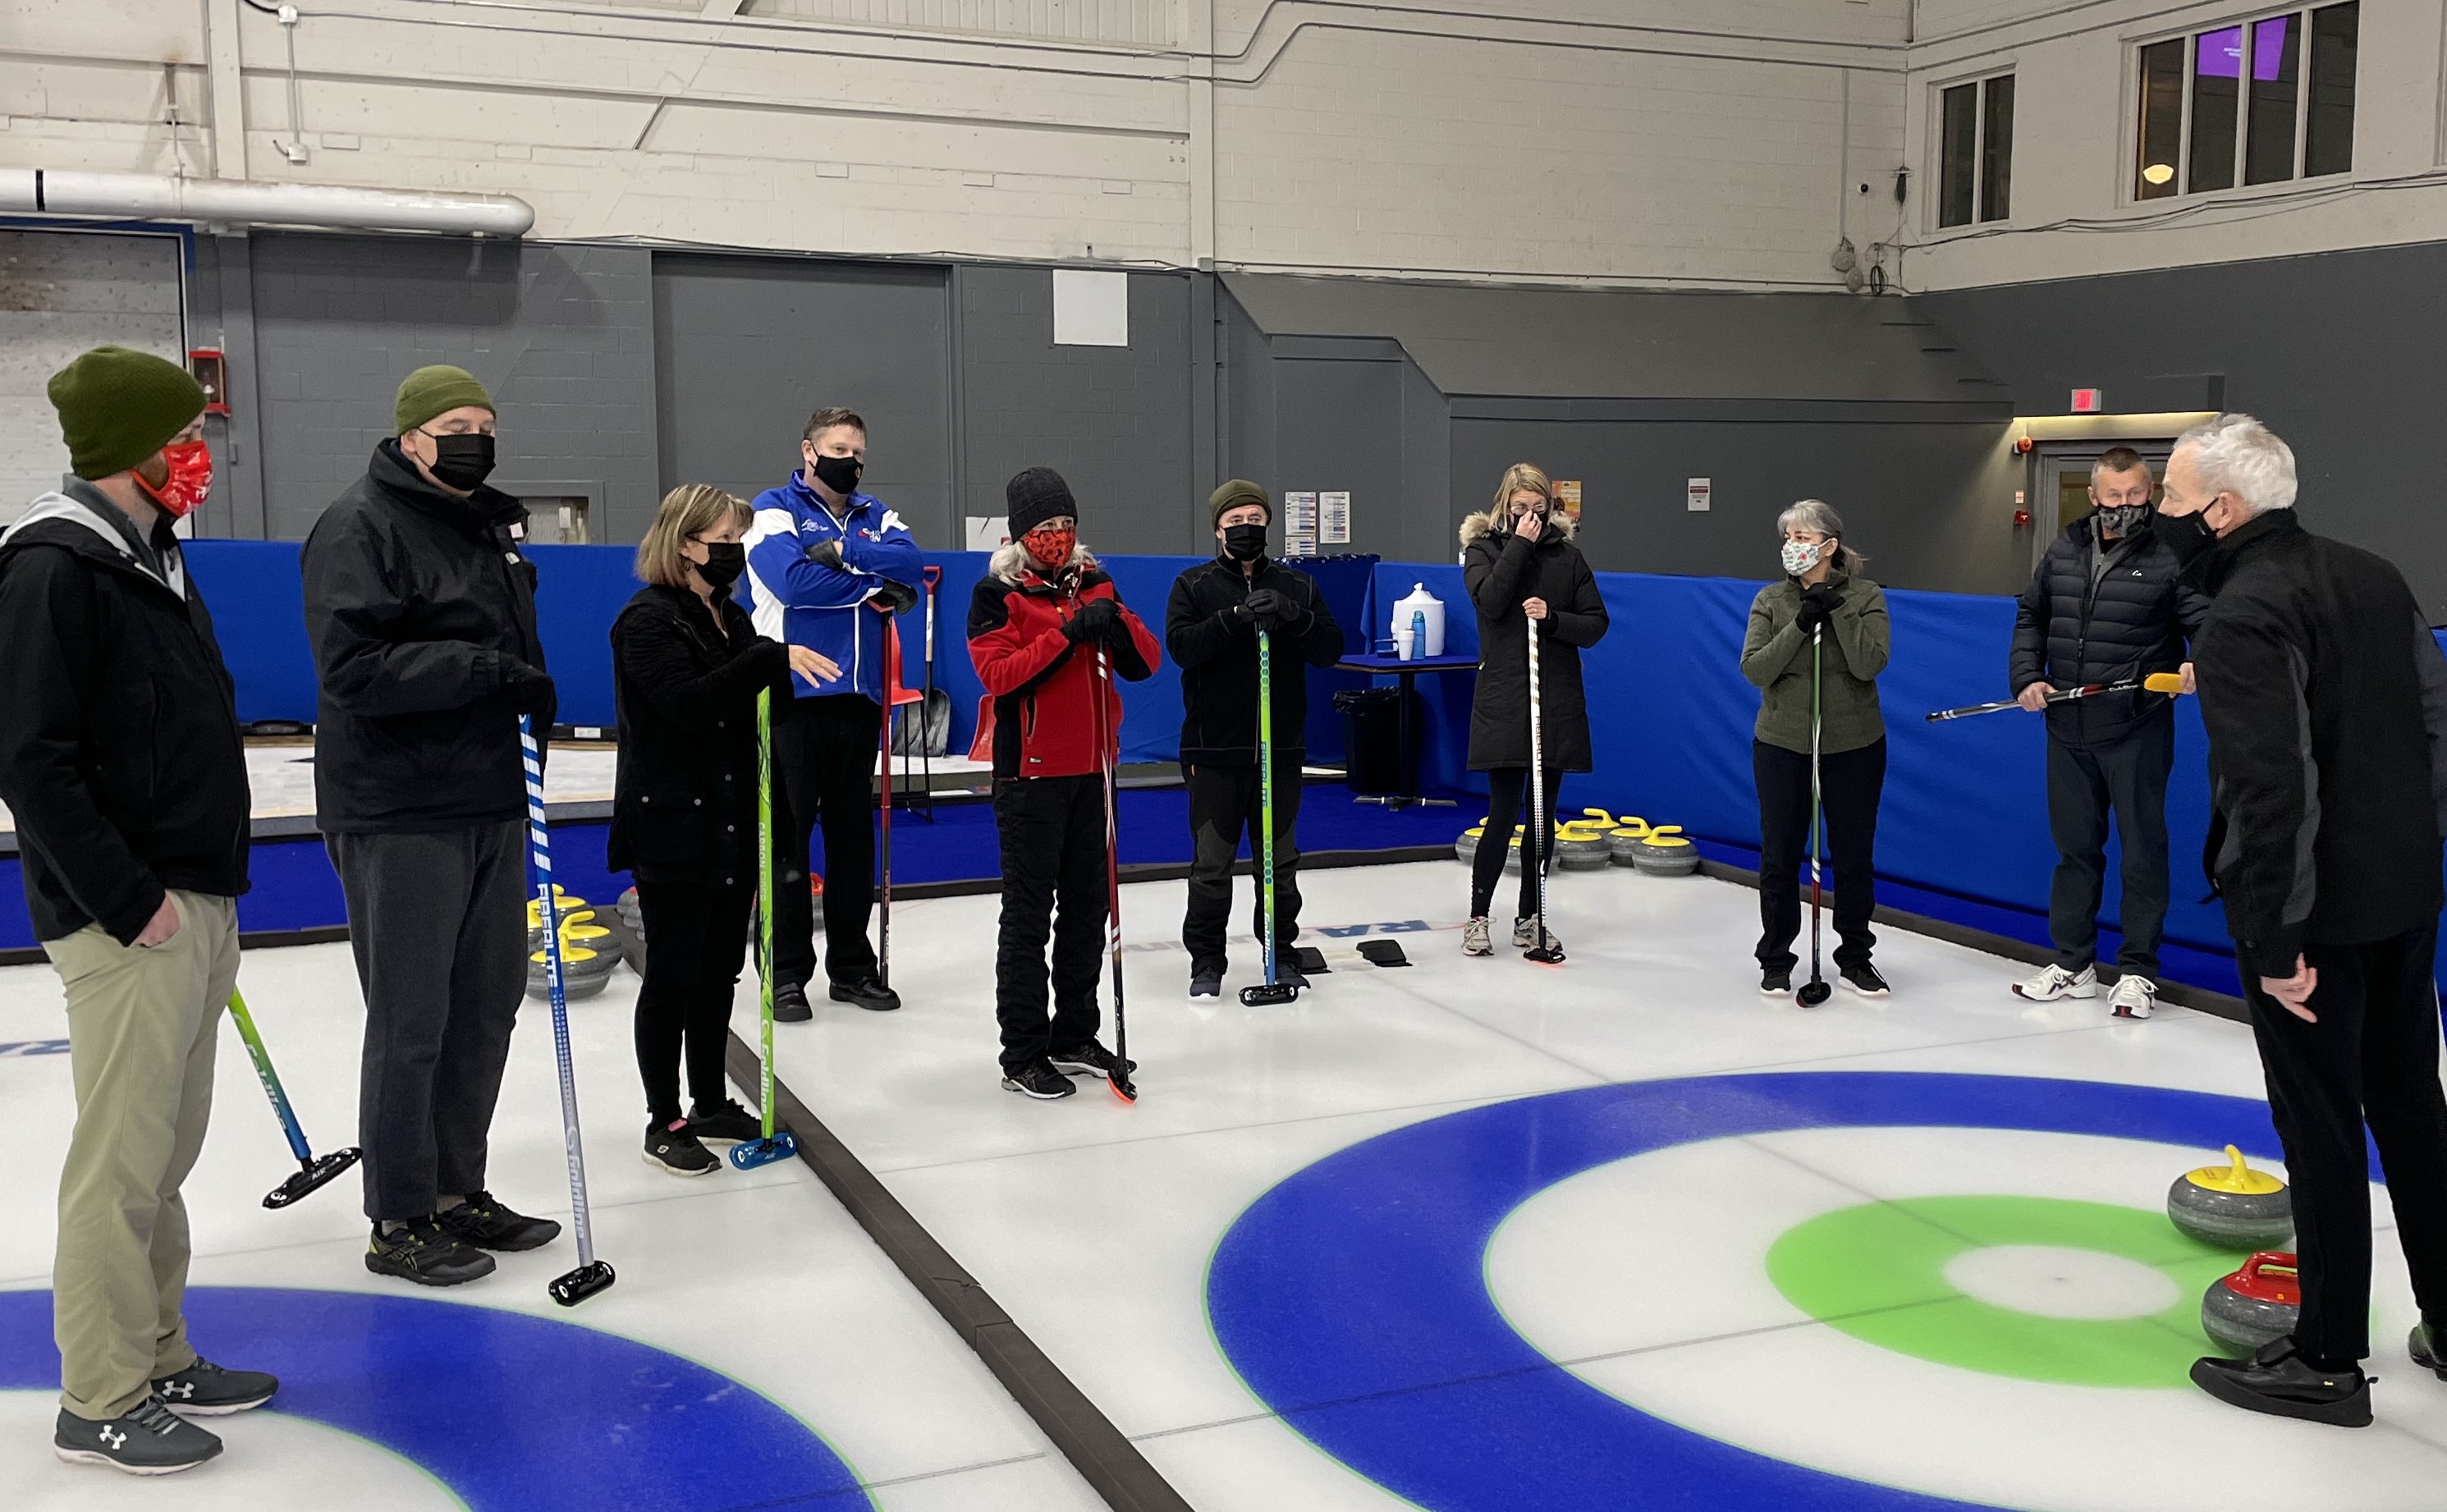 Les membres au RCN se réunissent au Centre RA pour apprendre le curling Image